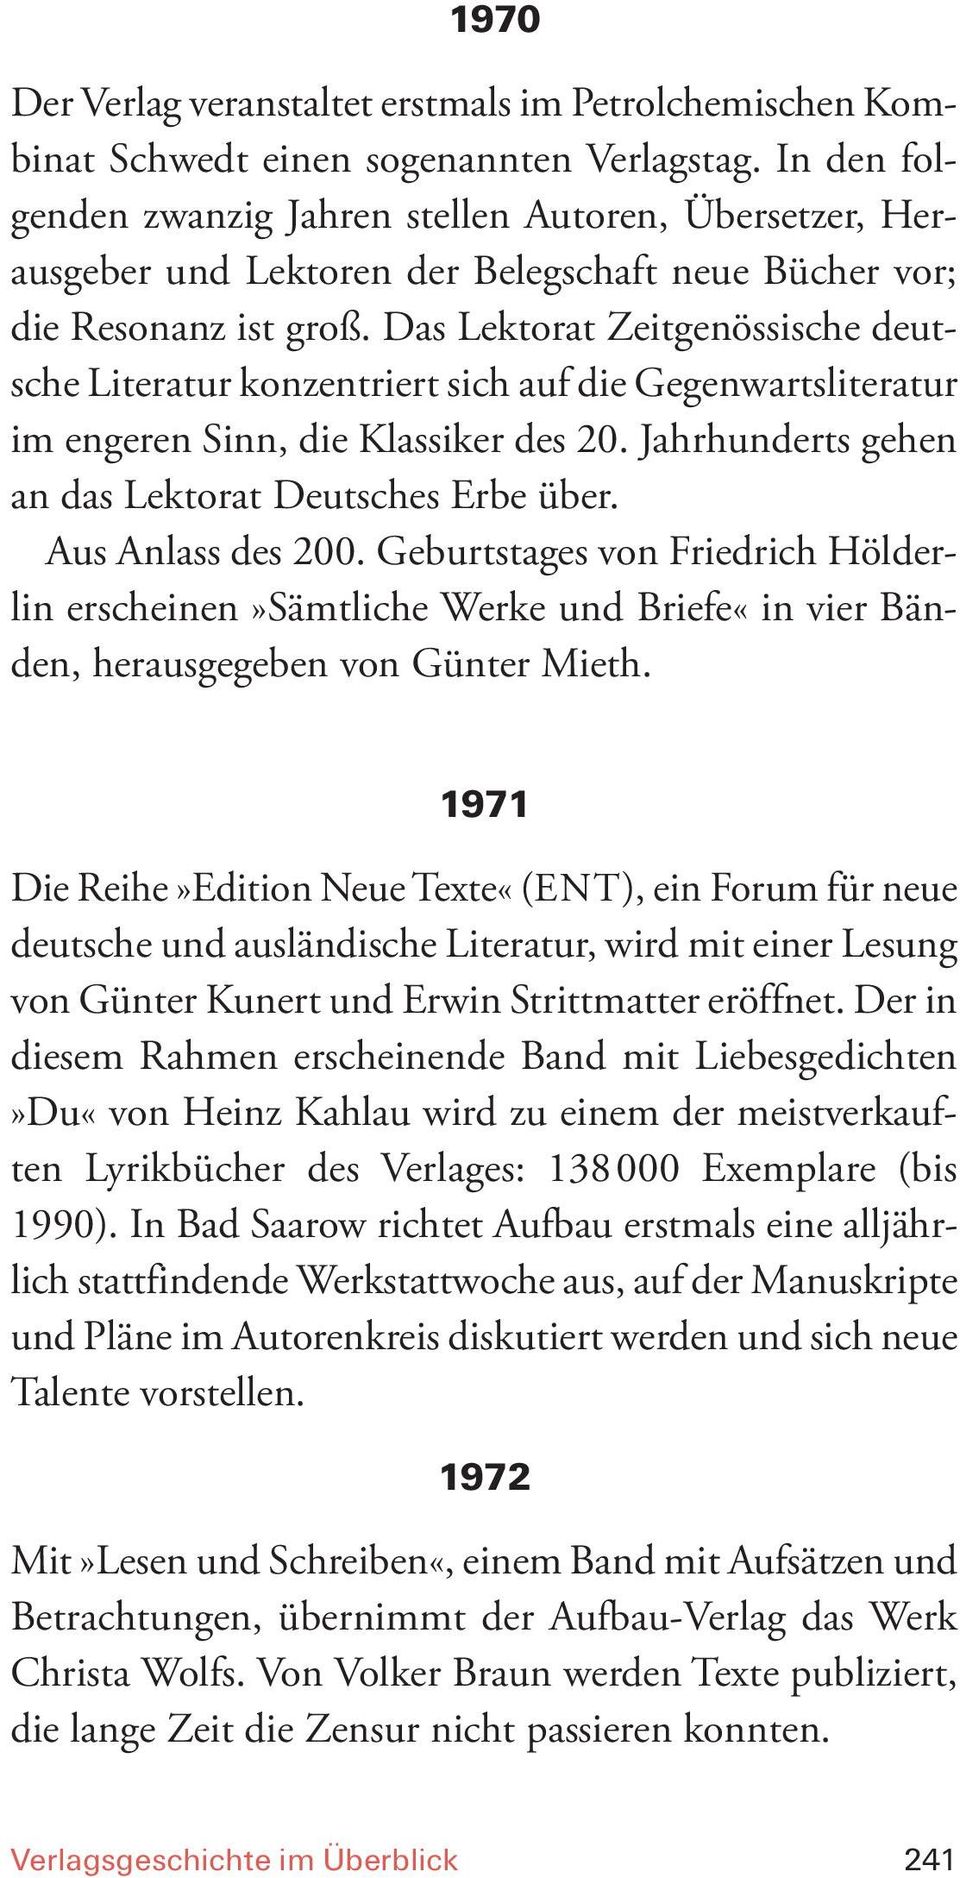 Das Lektorat Zeitgenössische deutsche Literatur konzentriert sich auf die Gegenwartsliteratur im engeren Sinn, die Klassiker des 20. Jahrhunderts gehen an das Lektorat Deutsches Erbe über.